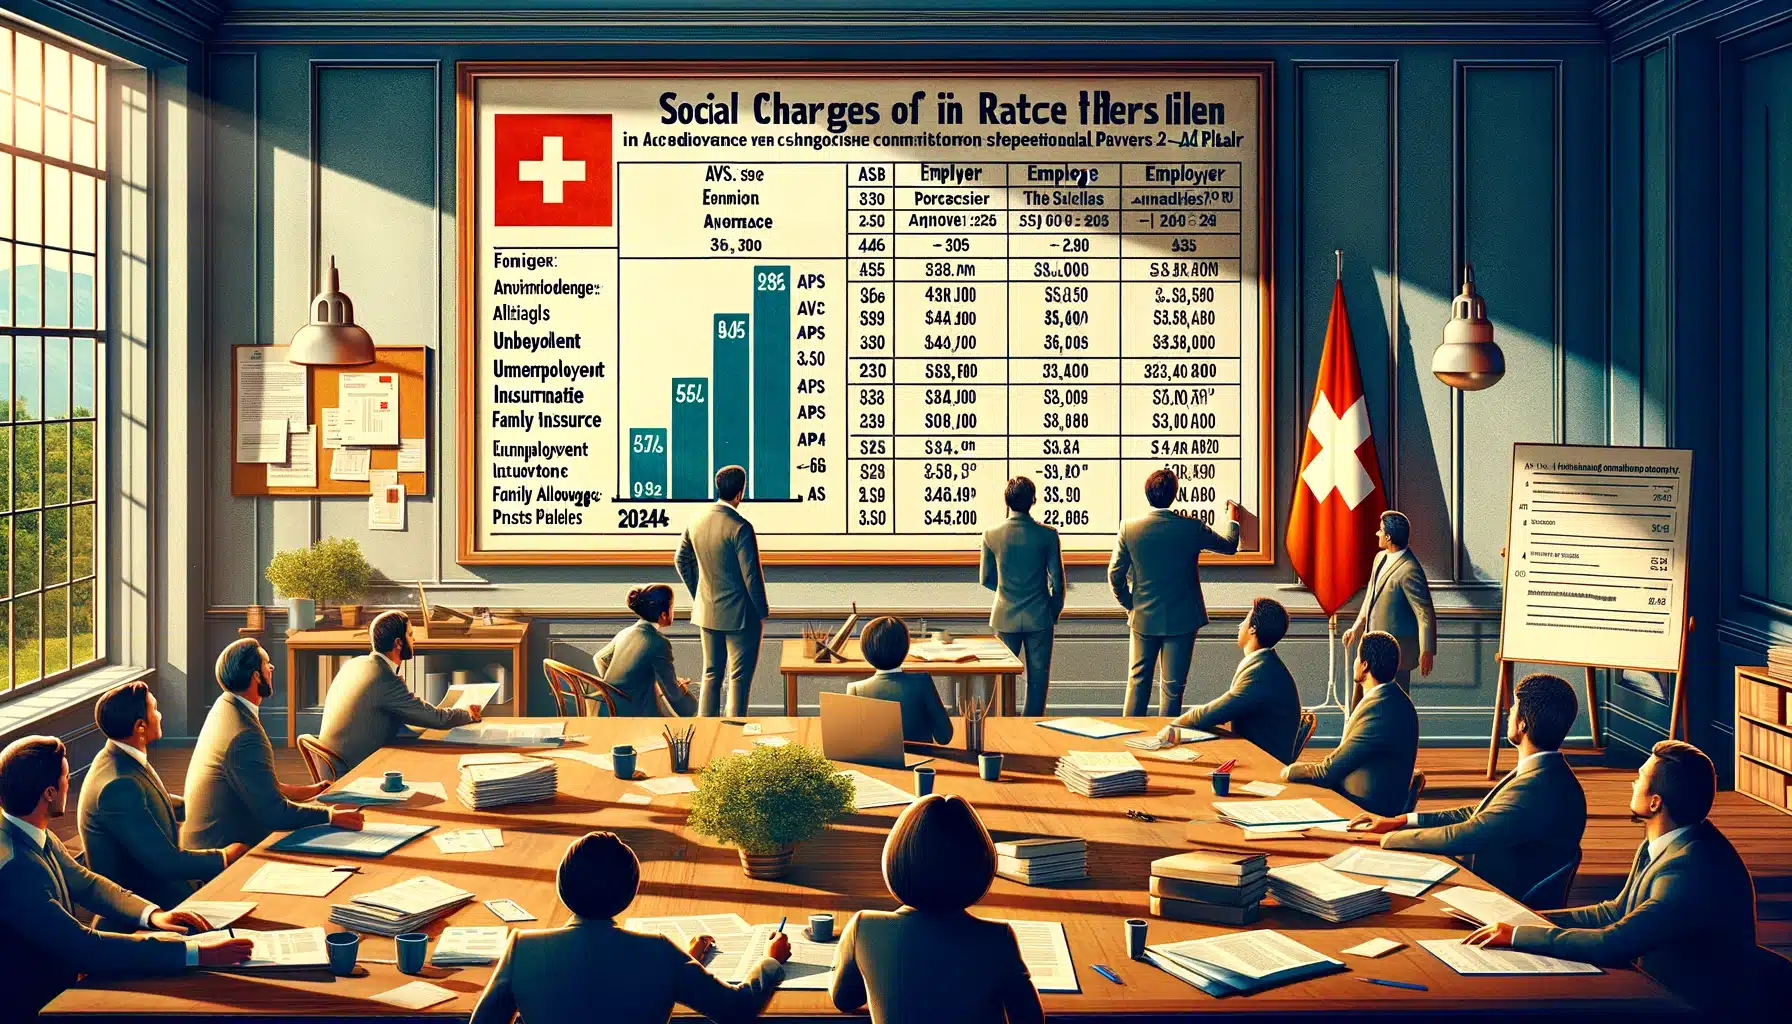 Charges sociales suisse calcul deduction